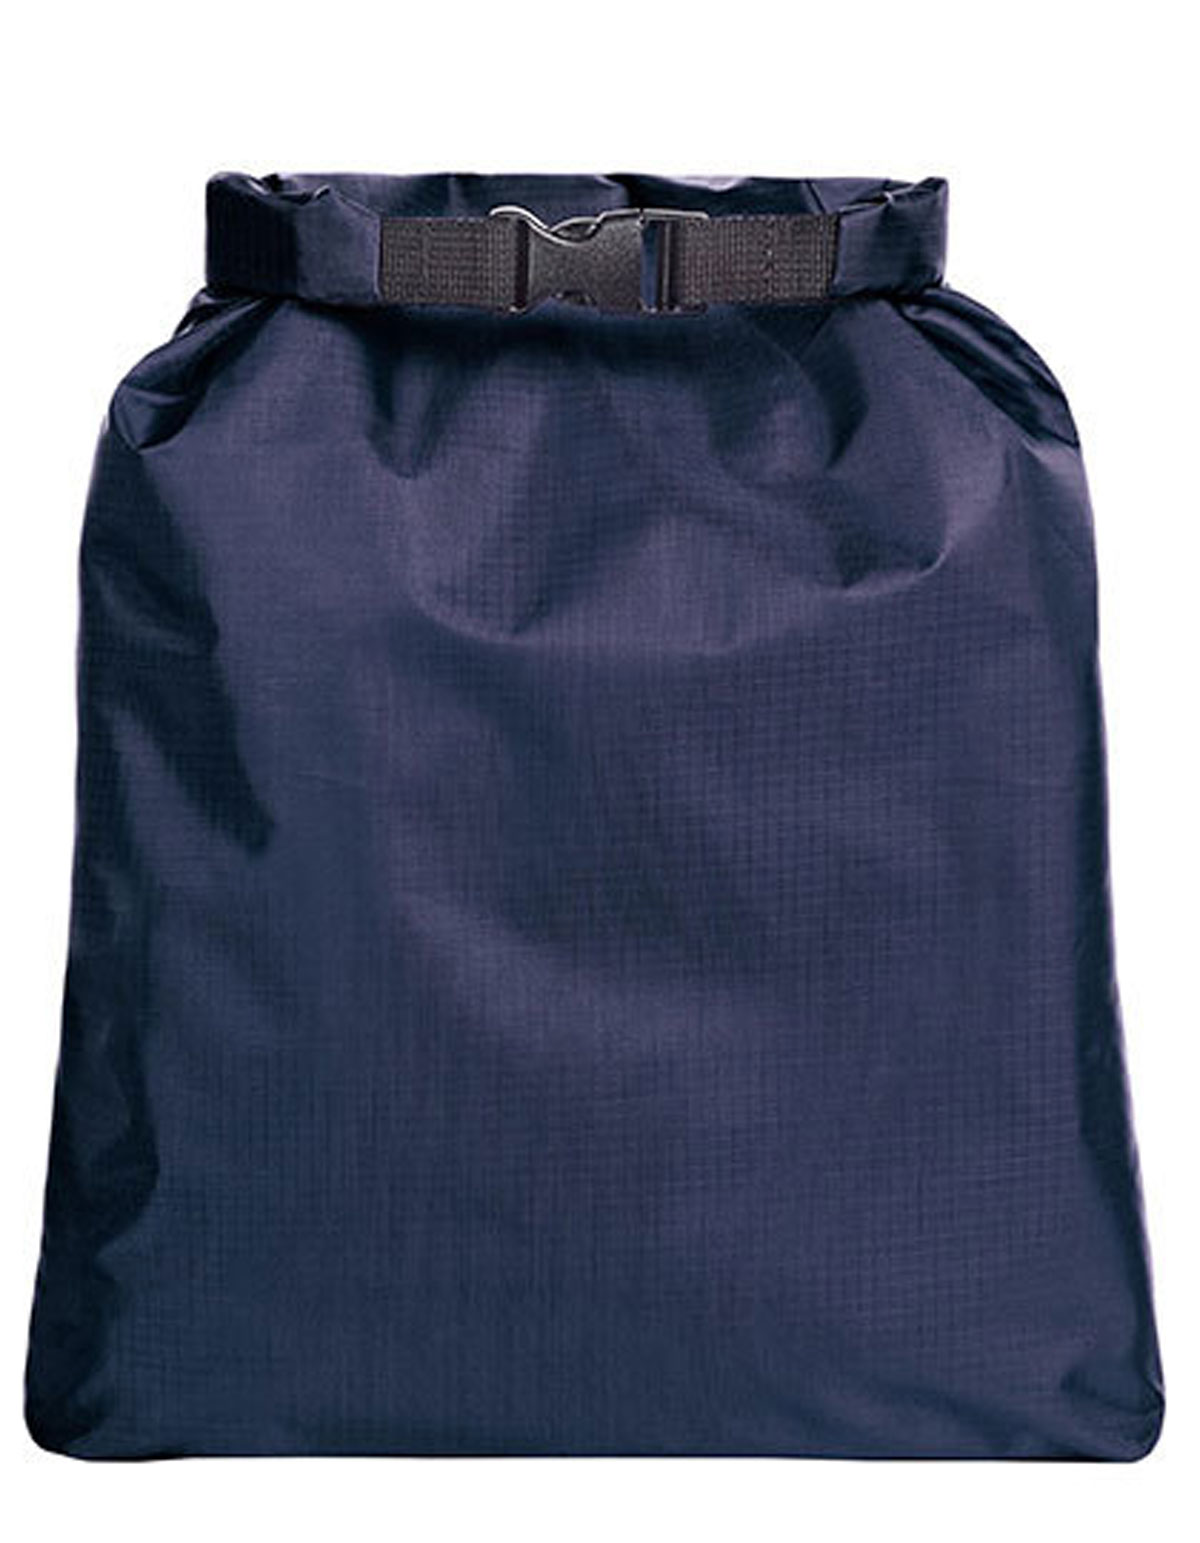 Drybag Safe 6 L Halfar HF8027